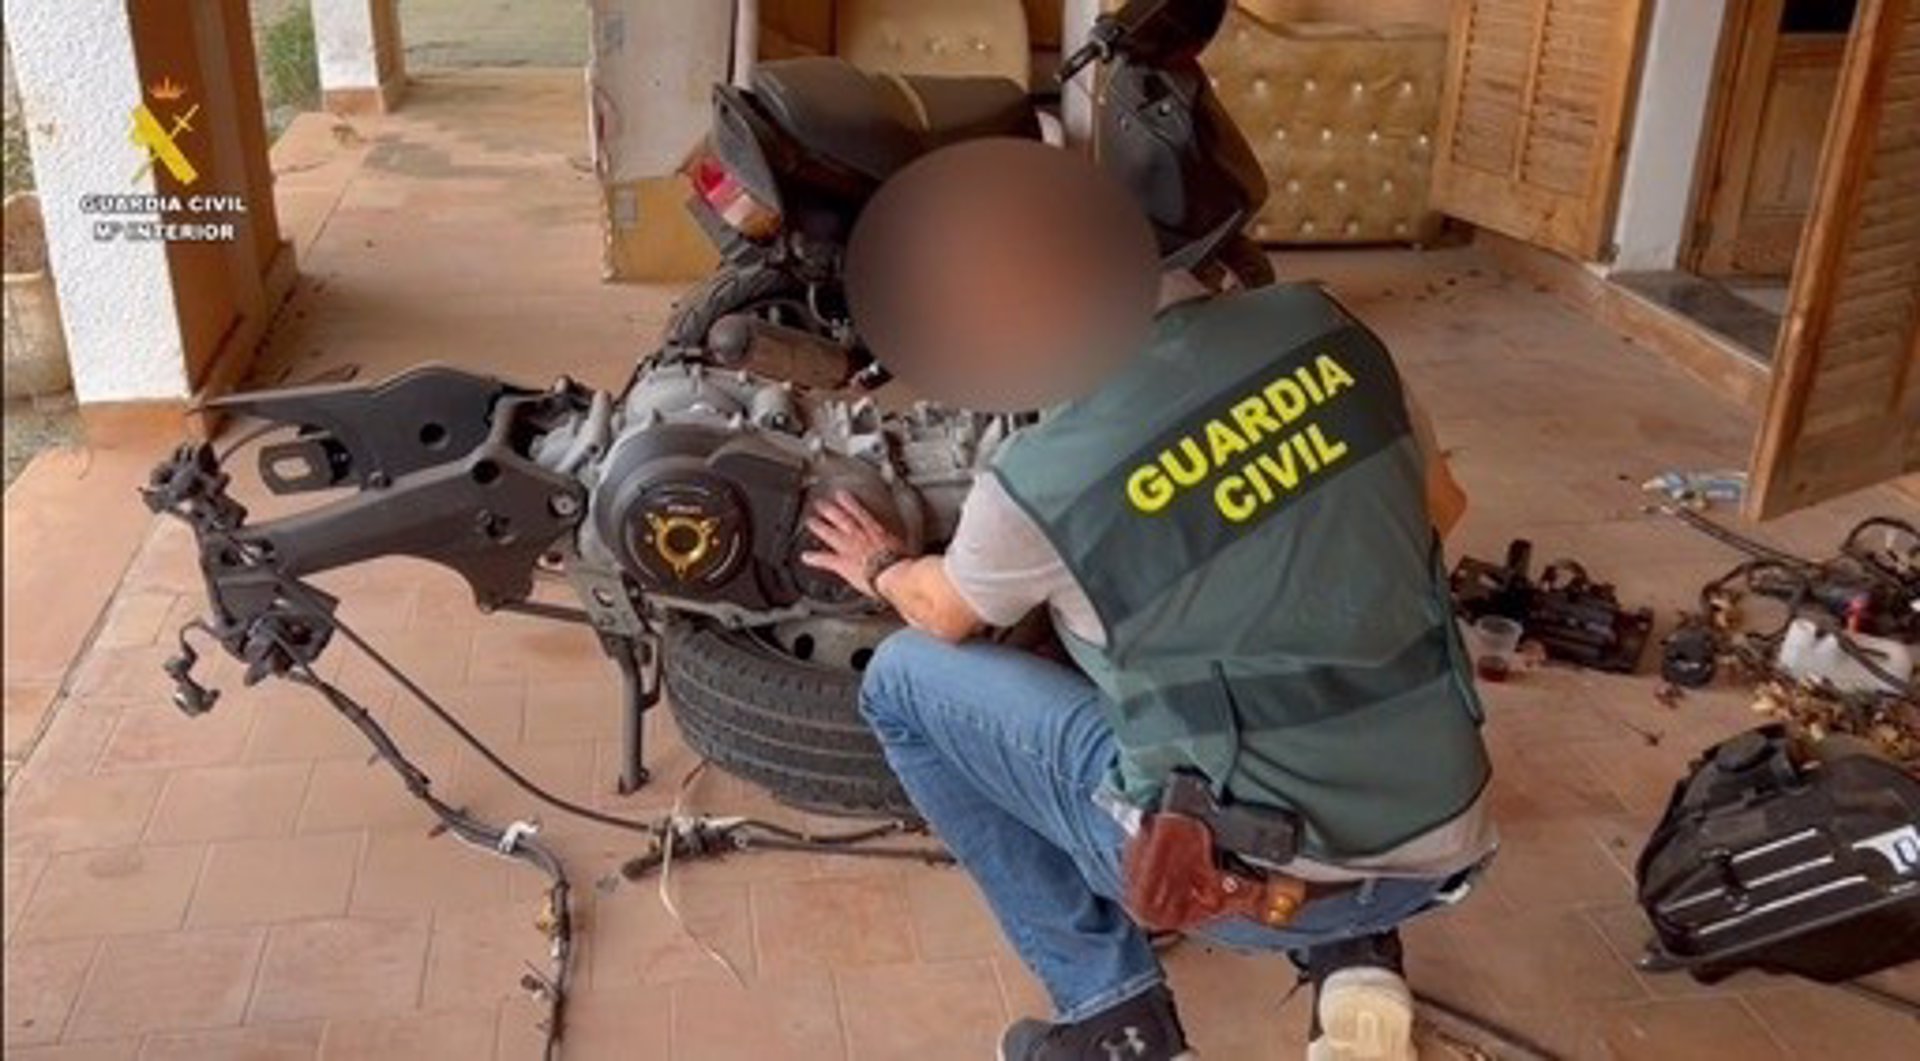 Desarticulada organización criminal dedicada a sustraer vehículos, motos de agua y embarcaciones en Mallorca - GUARDIA CIVIL.